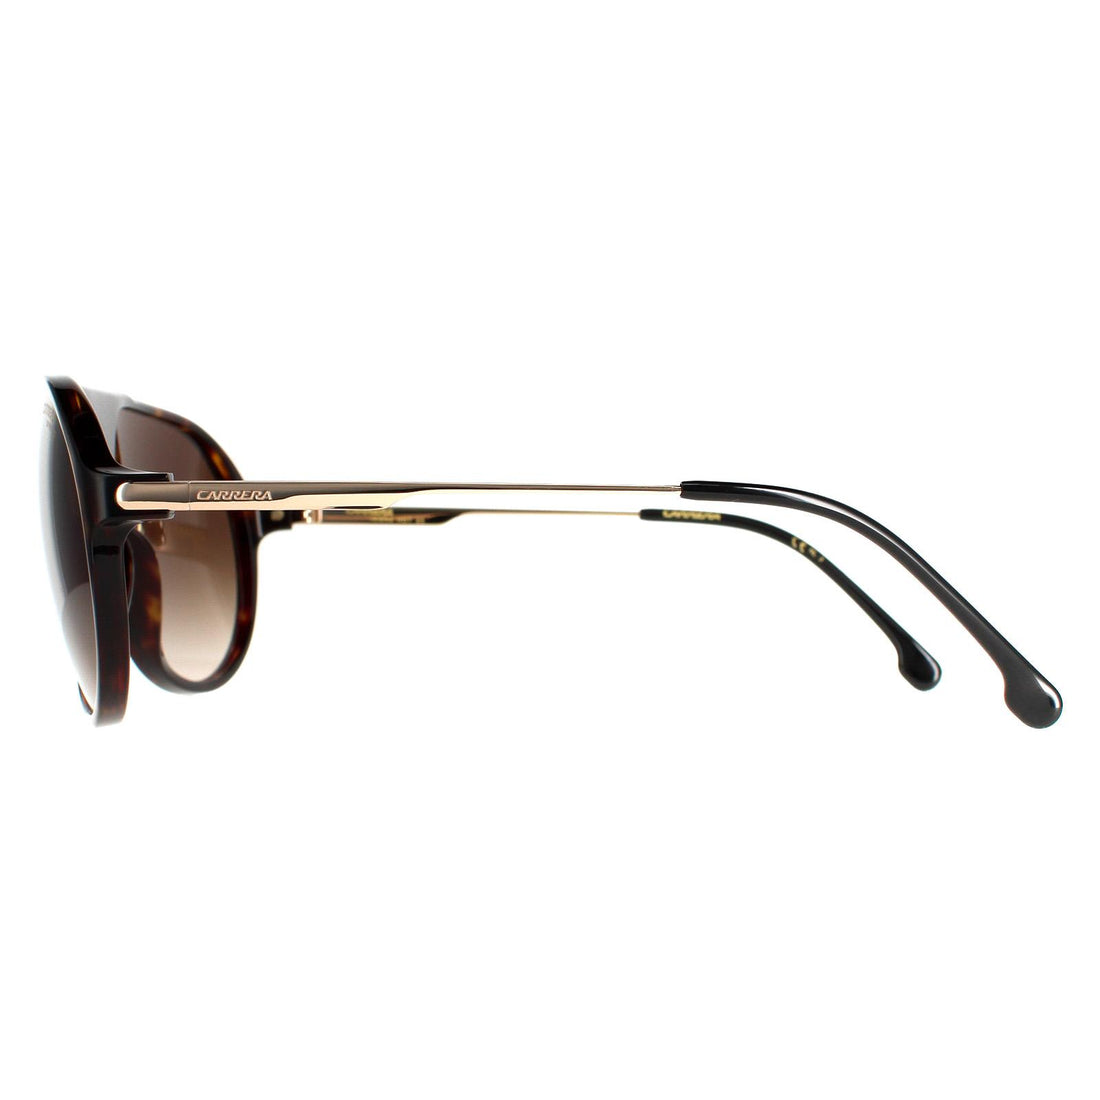 Carrera Hot 65 Sunglasses